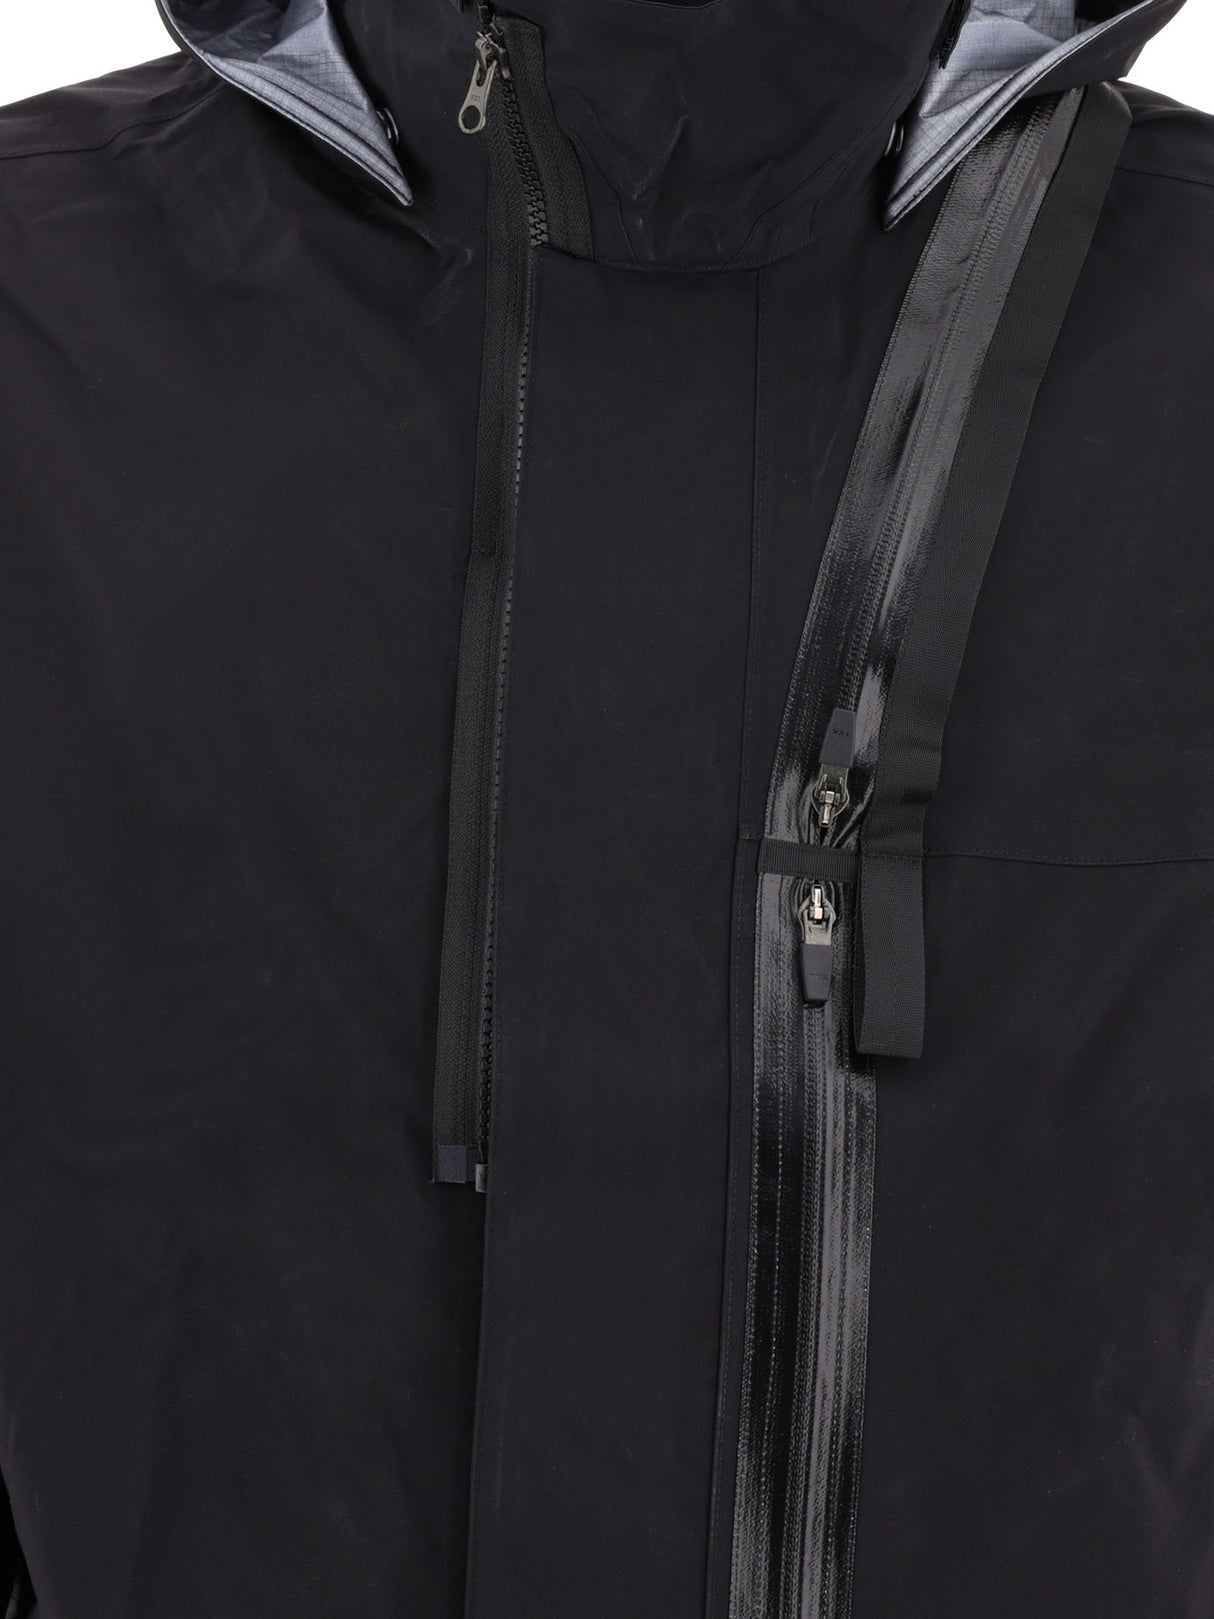 男士黑色休闲版 Gore-Tex Pro 夹克外套